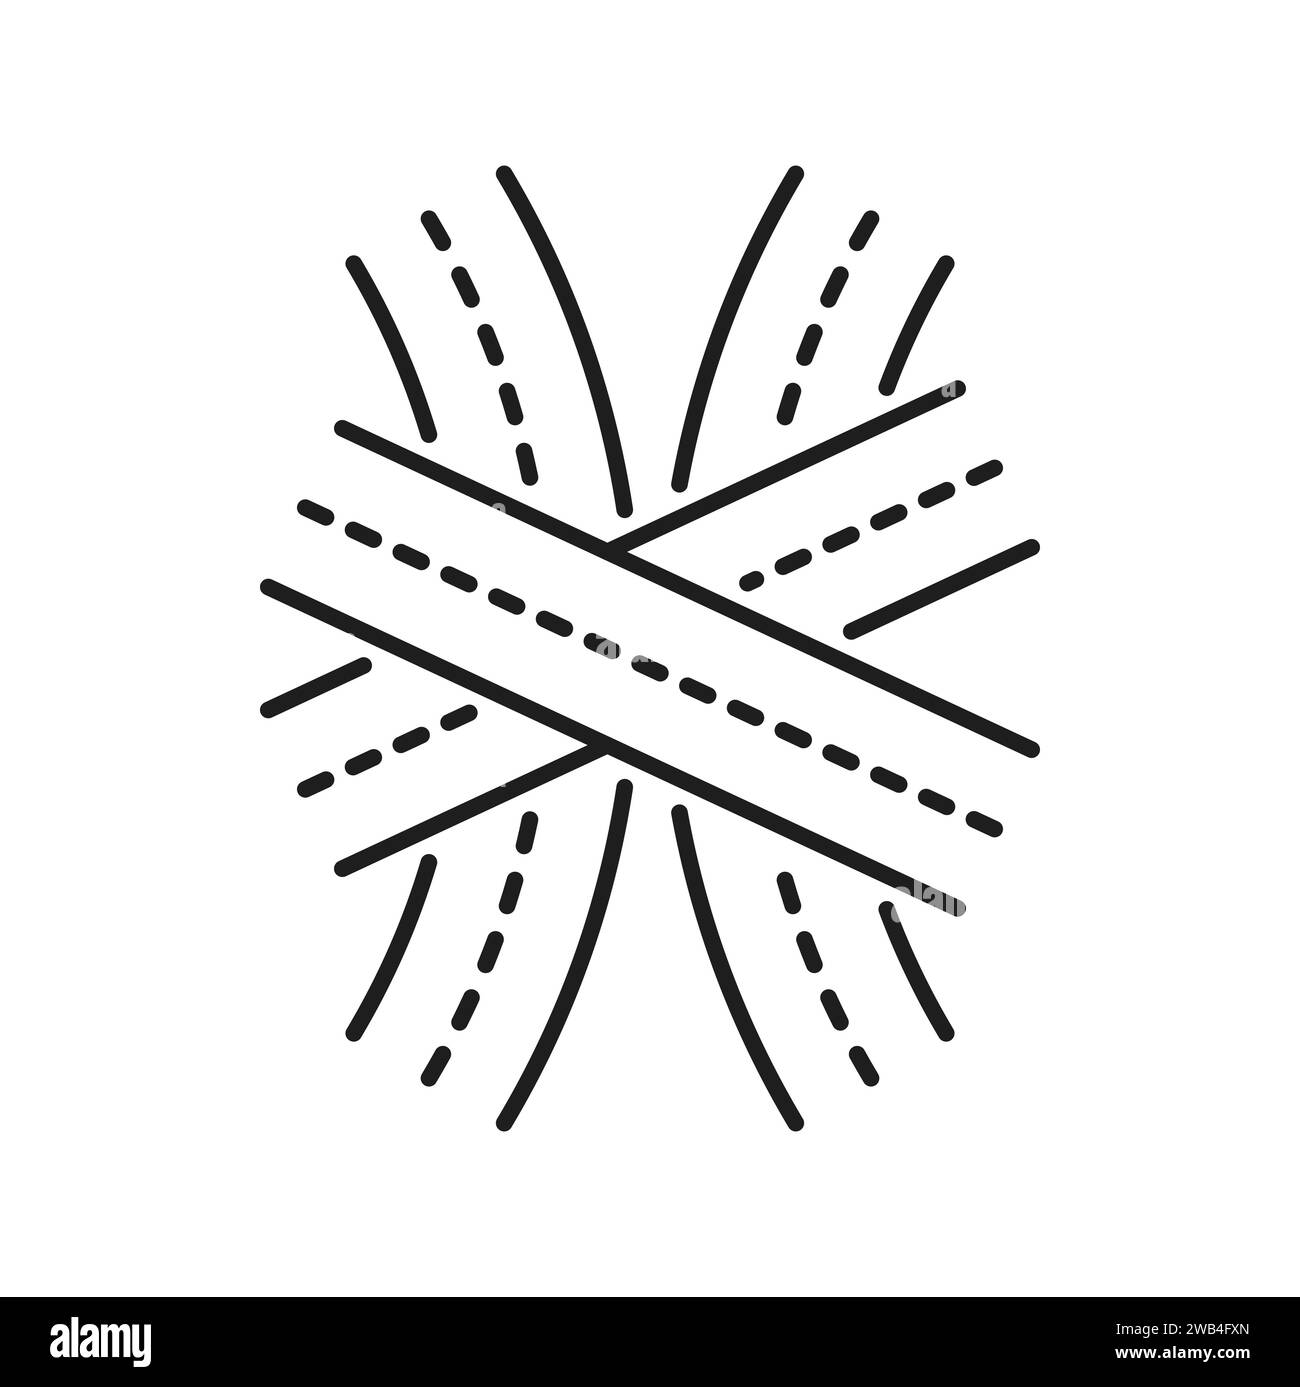 Autobahnkreuzlinie Symbol der Kreuzungsroute, Straßenverkehrsvektor-lineares Piktogramm. Verkehrsschild des Autobahnkreuzes oder Verkehrskreuzung der Verkehrsspur für das Stadtnavigationszeichen Stock Vektor